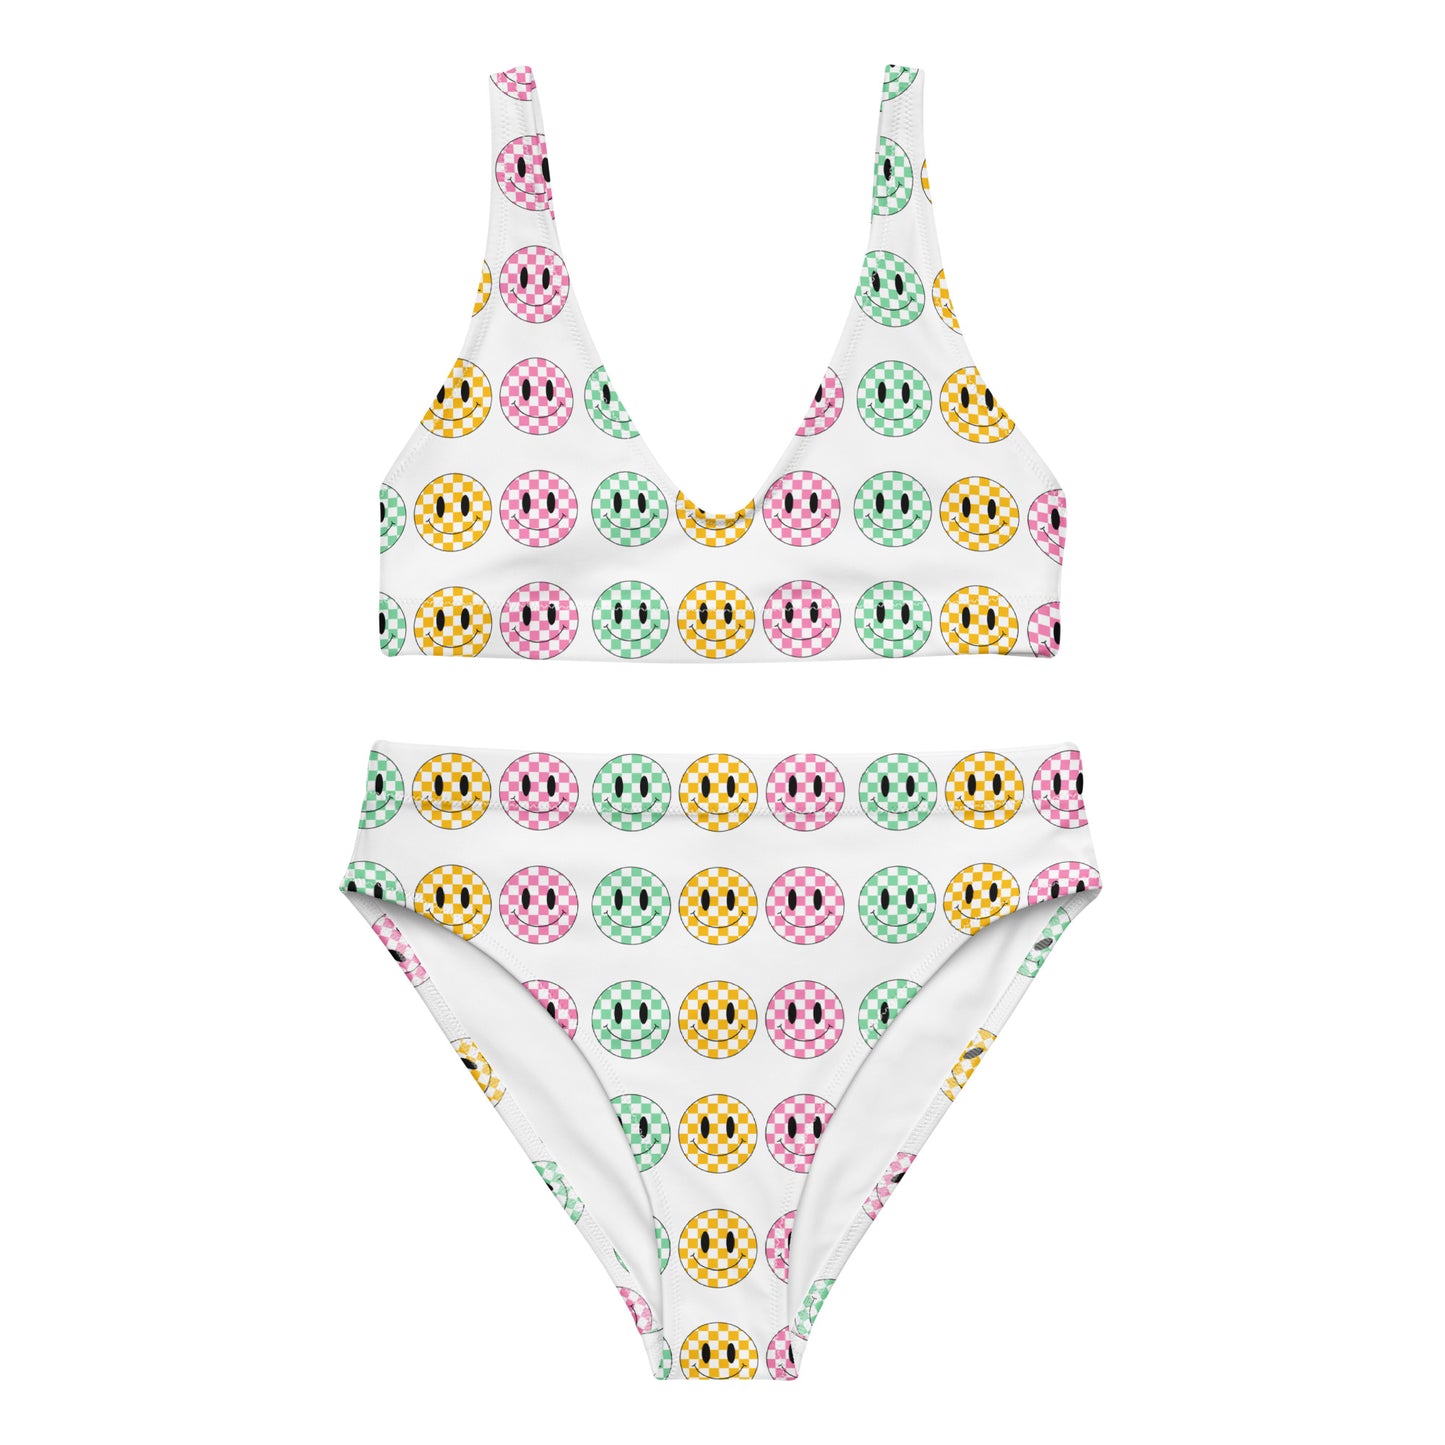 Checkered Smiley high-waisted bikini